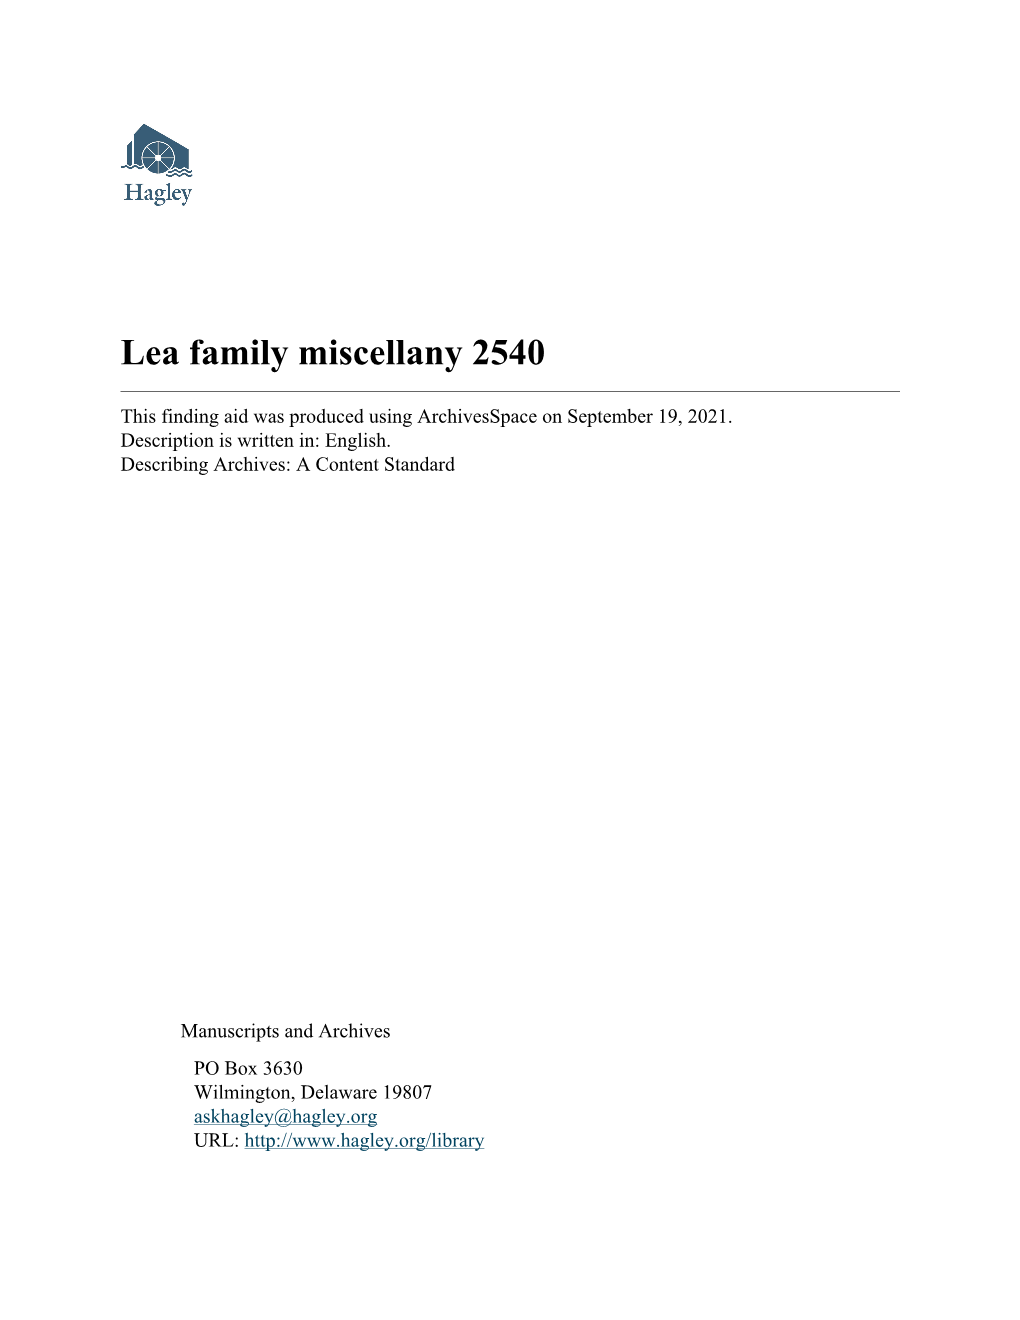 Lea Family Miscellany 2540